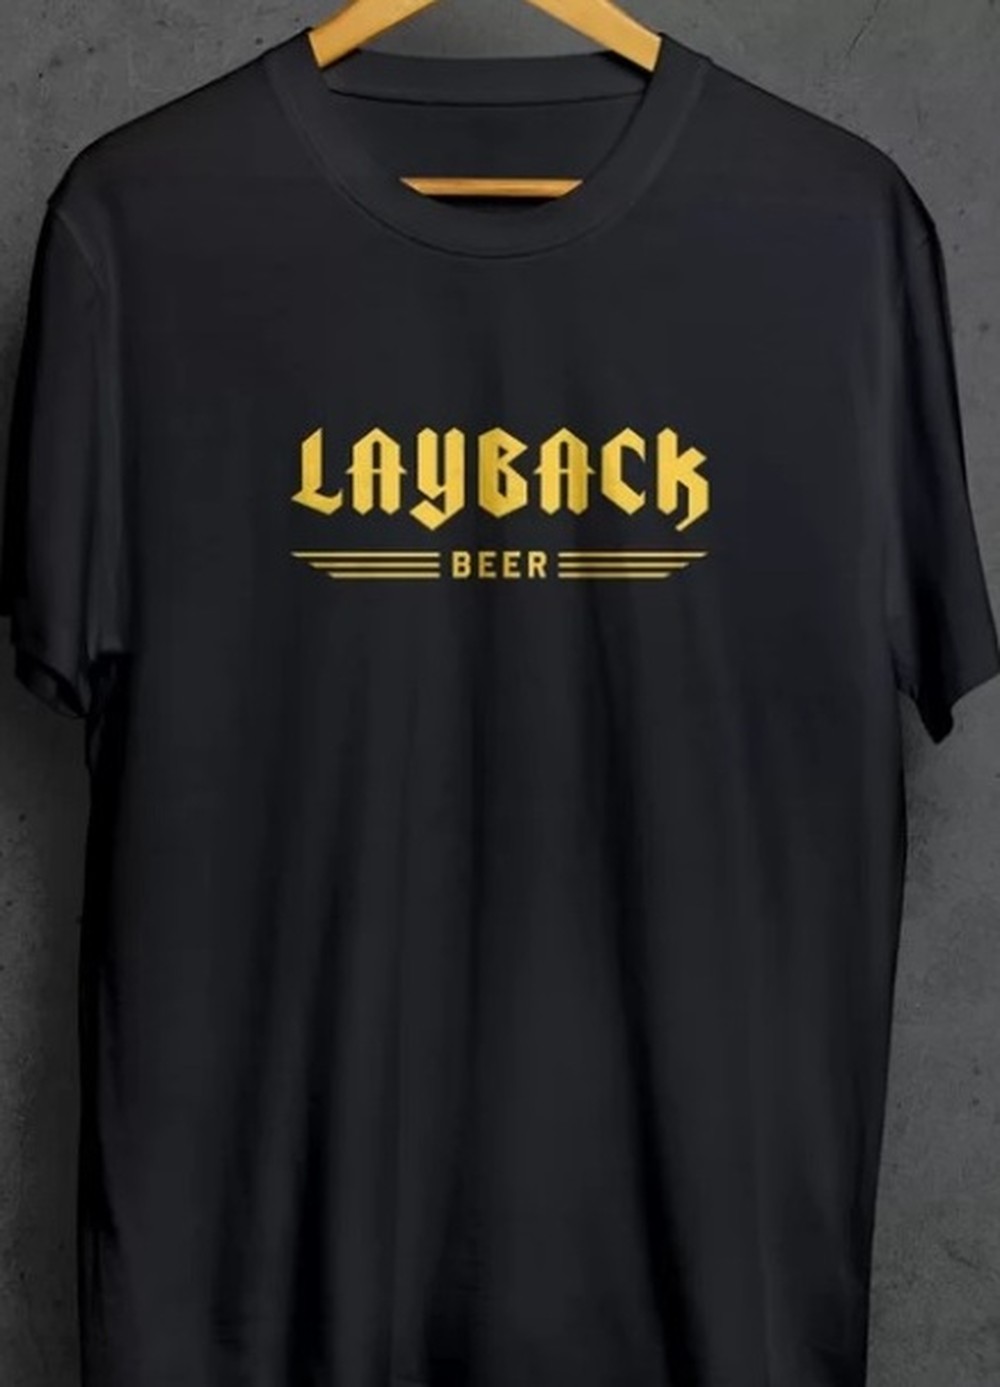 Camiseta Layback Beer Classic Preto